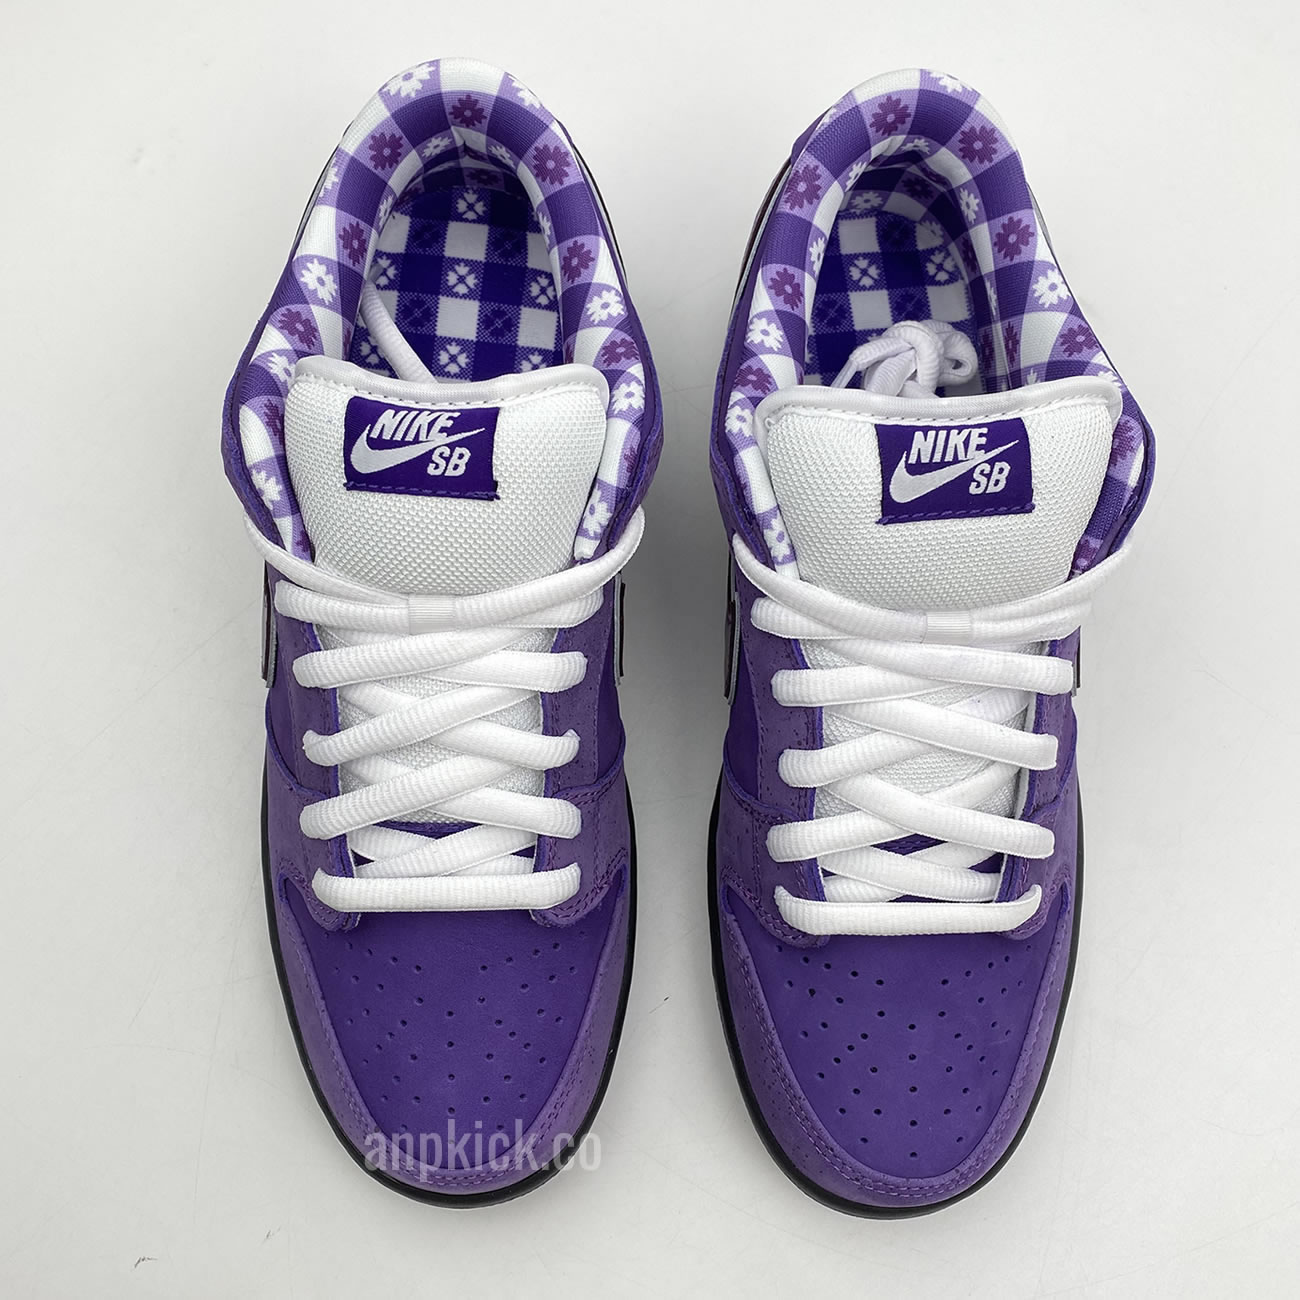 Anpkick Nike Sb Dunk Low Concepts Purple Lobster Bv1310 55570 (4) - newkick.org